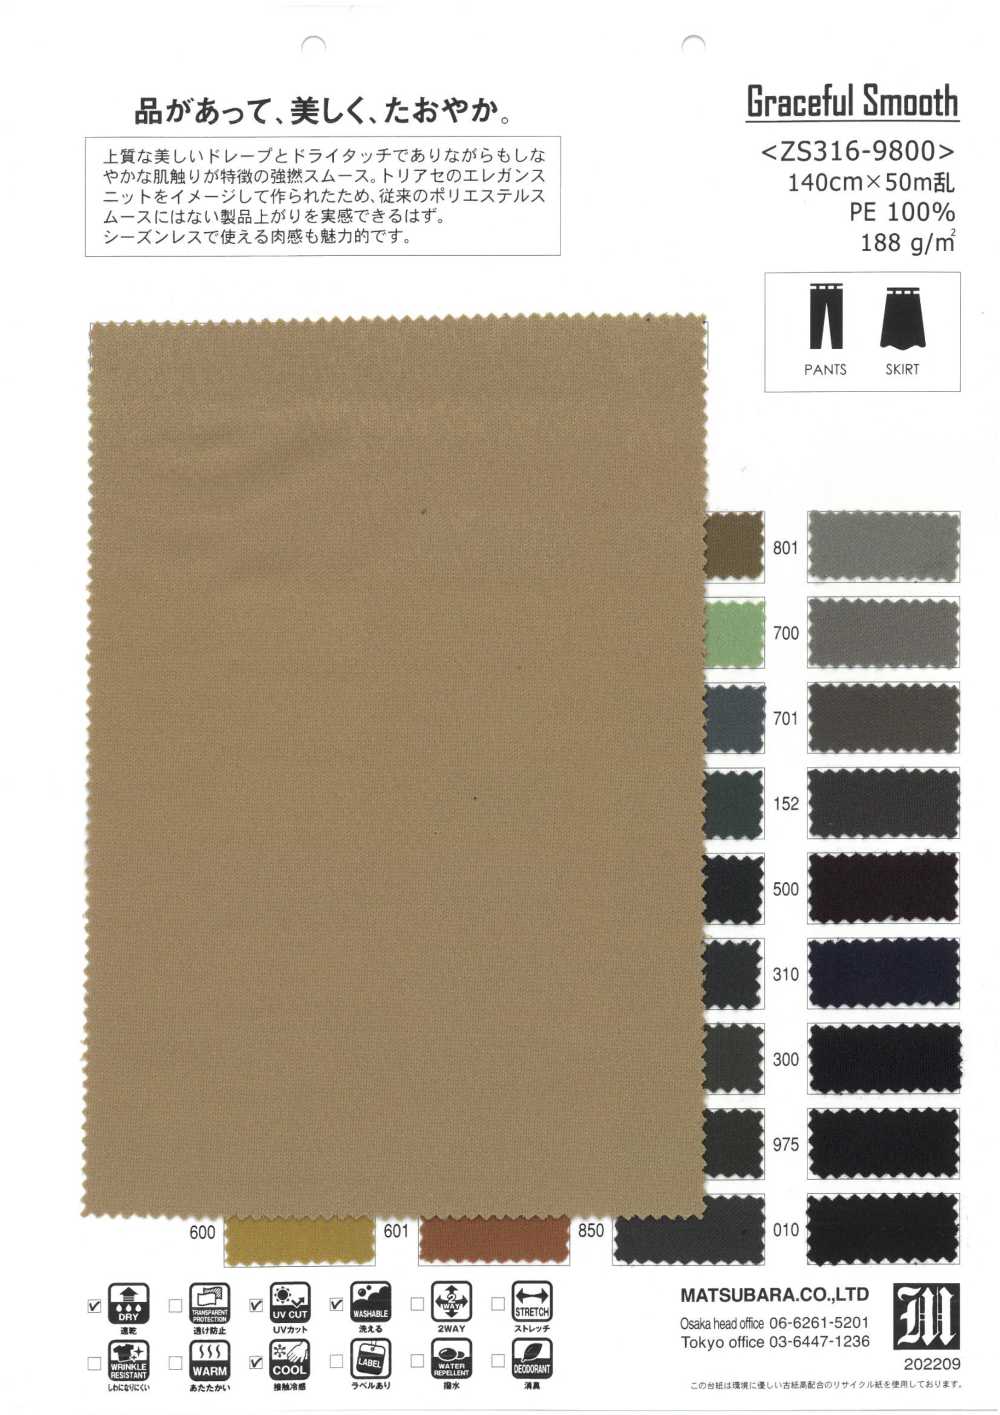 ZS316-9800 Lisse Et Gracieuse[Fabrication De Textile] Matsubara